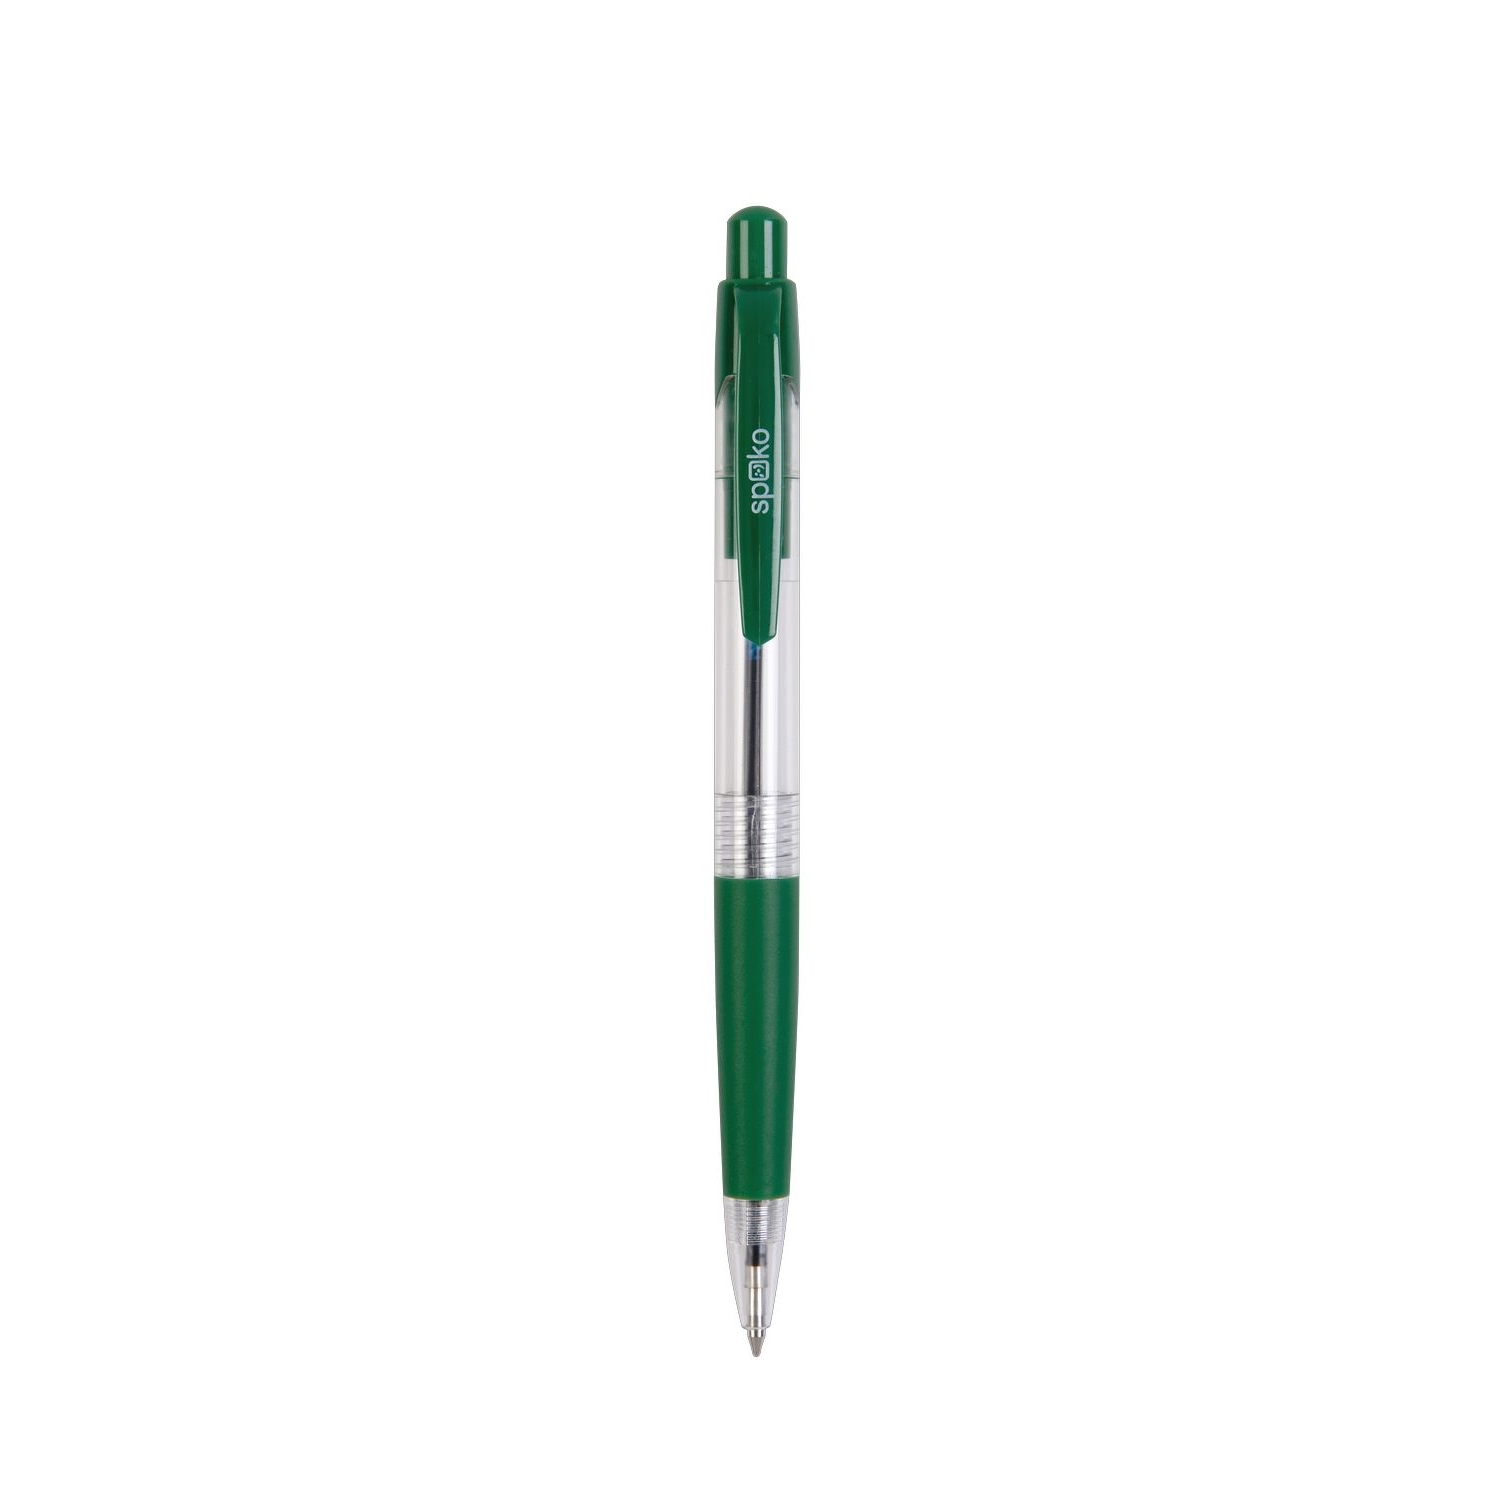 Kuličkové pero Spoko S0112, průhledné, zelená náplň, zelené